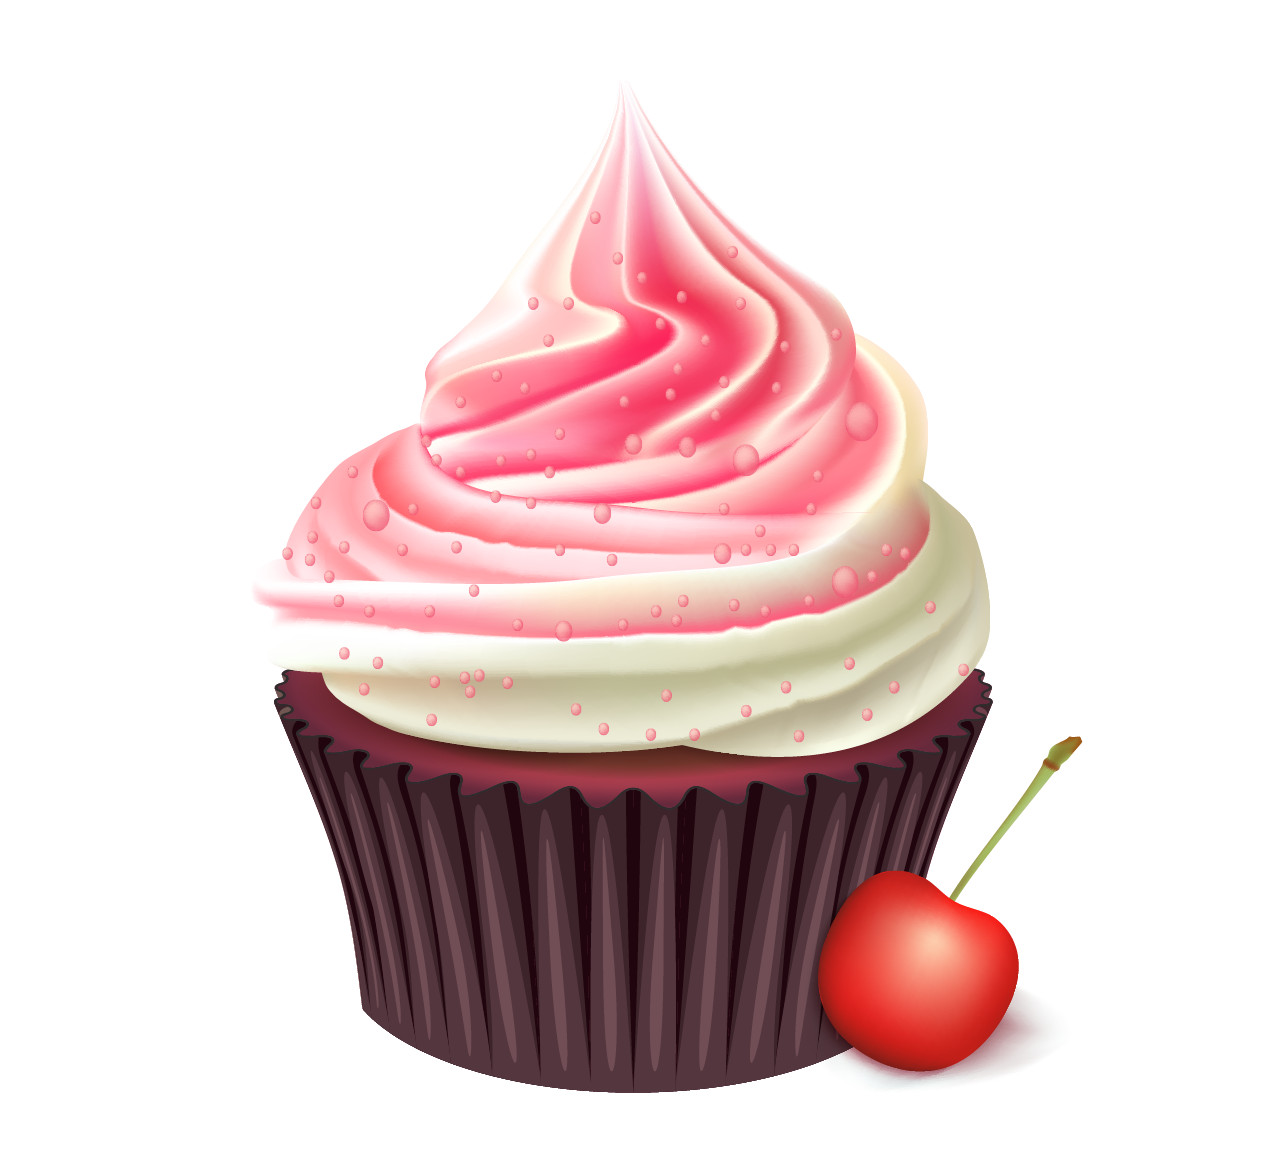 Cupcake Bakery Muffin Birthday Cake Cream Cherry Cupcakes Png